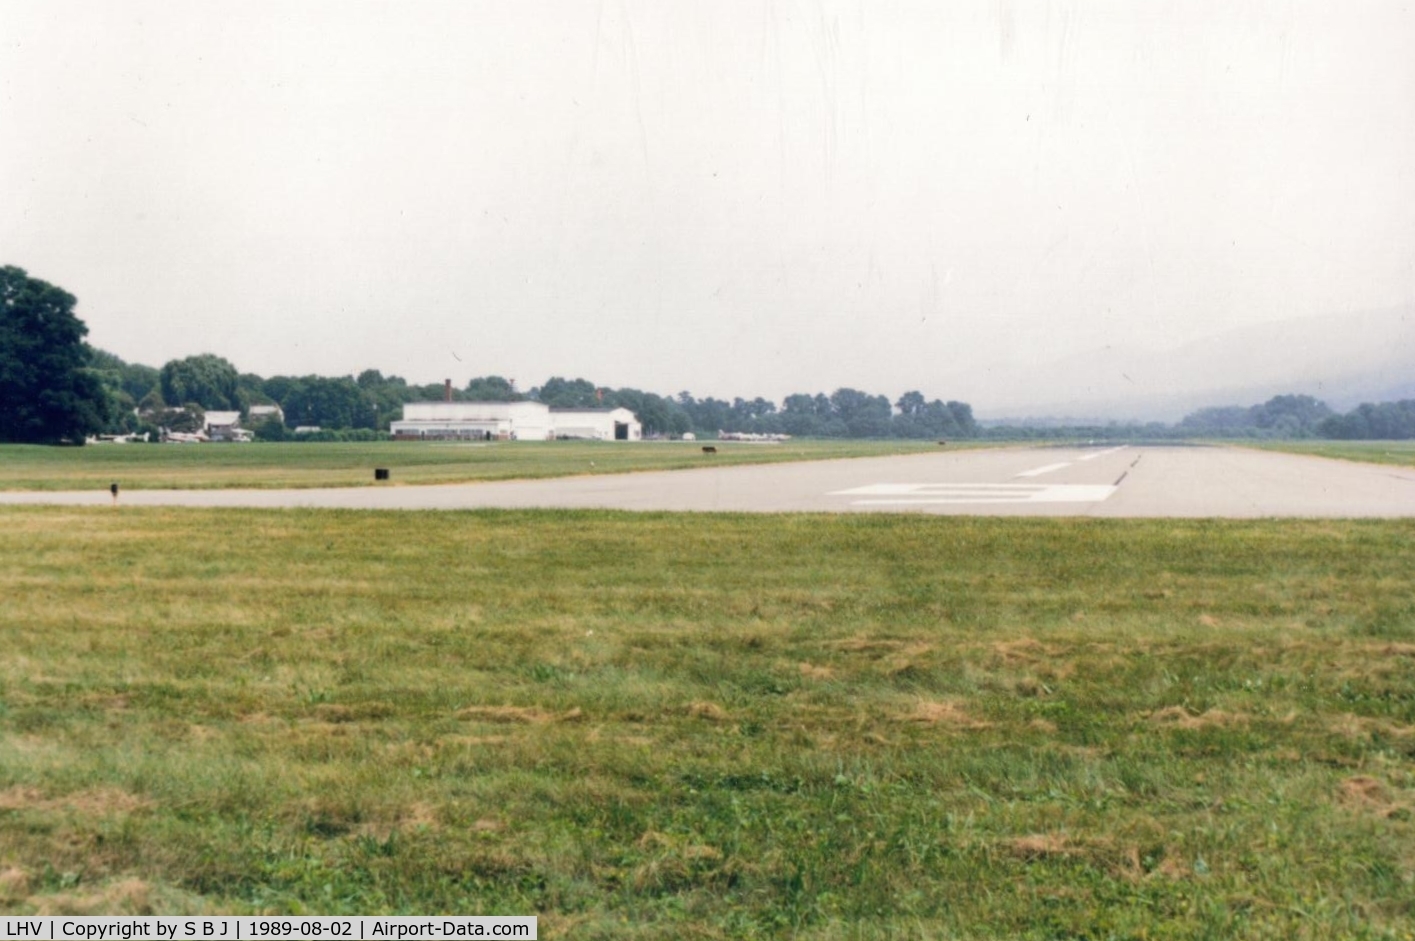 William T. Piper Memorial Airport (LHV) - Threshold of runway 9 at Piper airport.